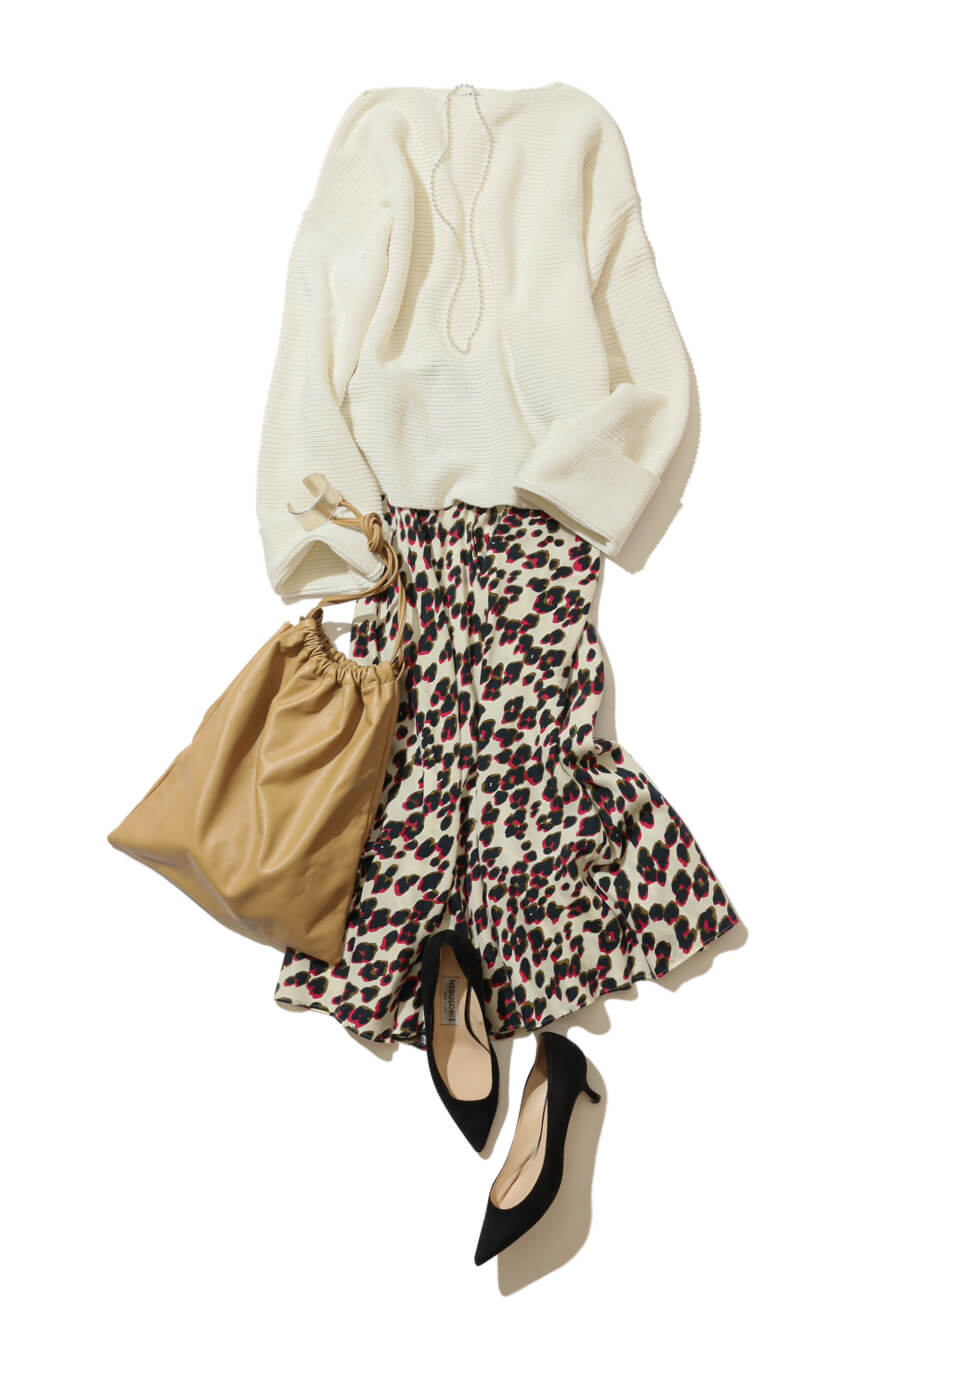 強めなレオパード柄スカートで 女っぽ白コーデに切れ味をプラス Baycrew S Store